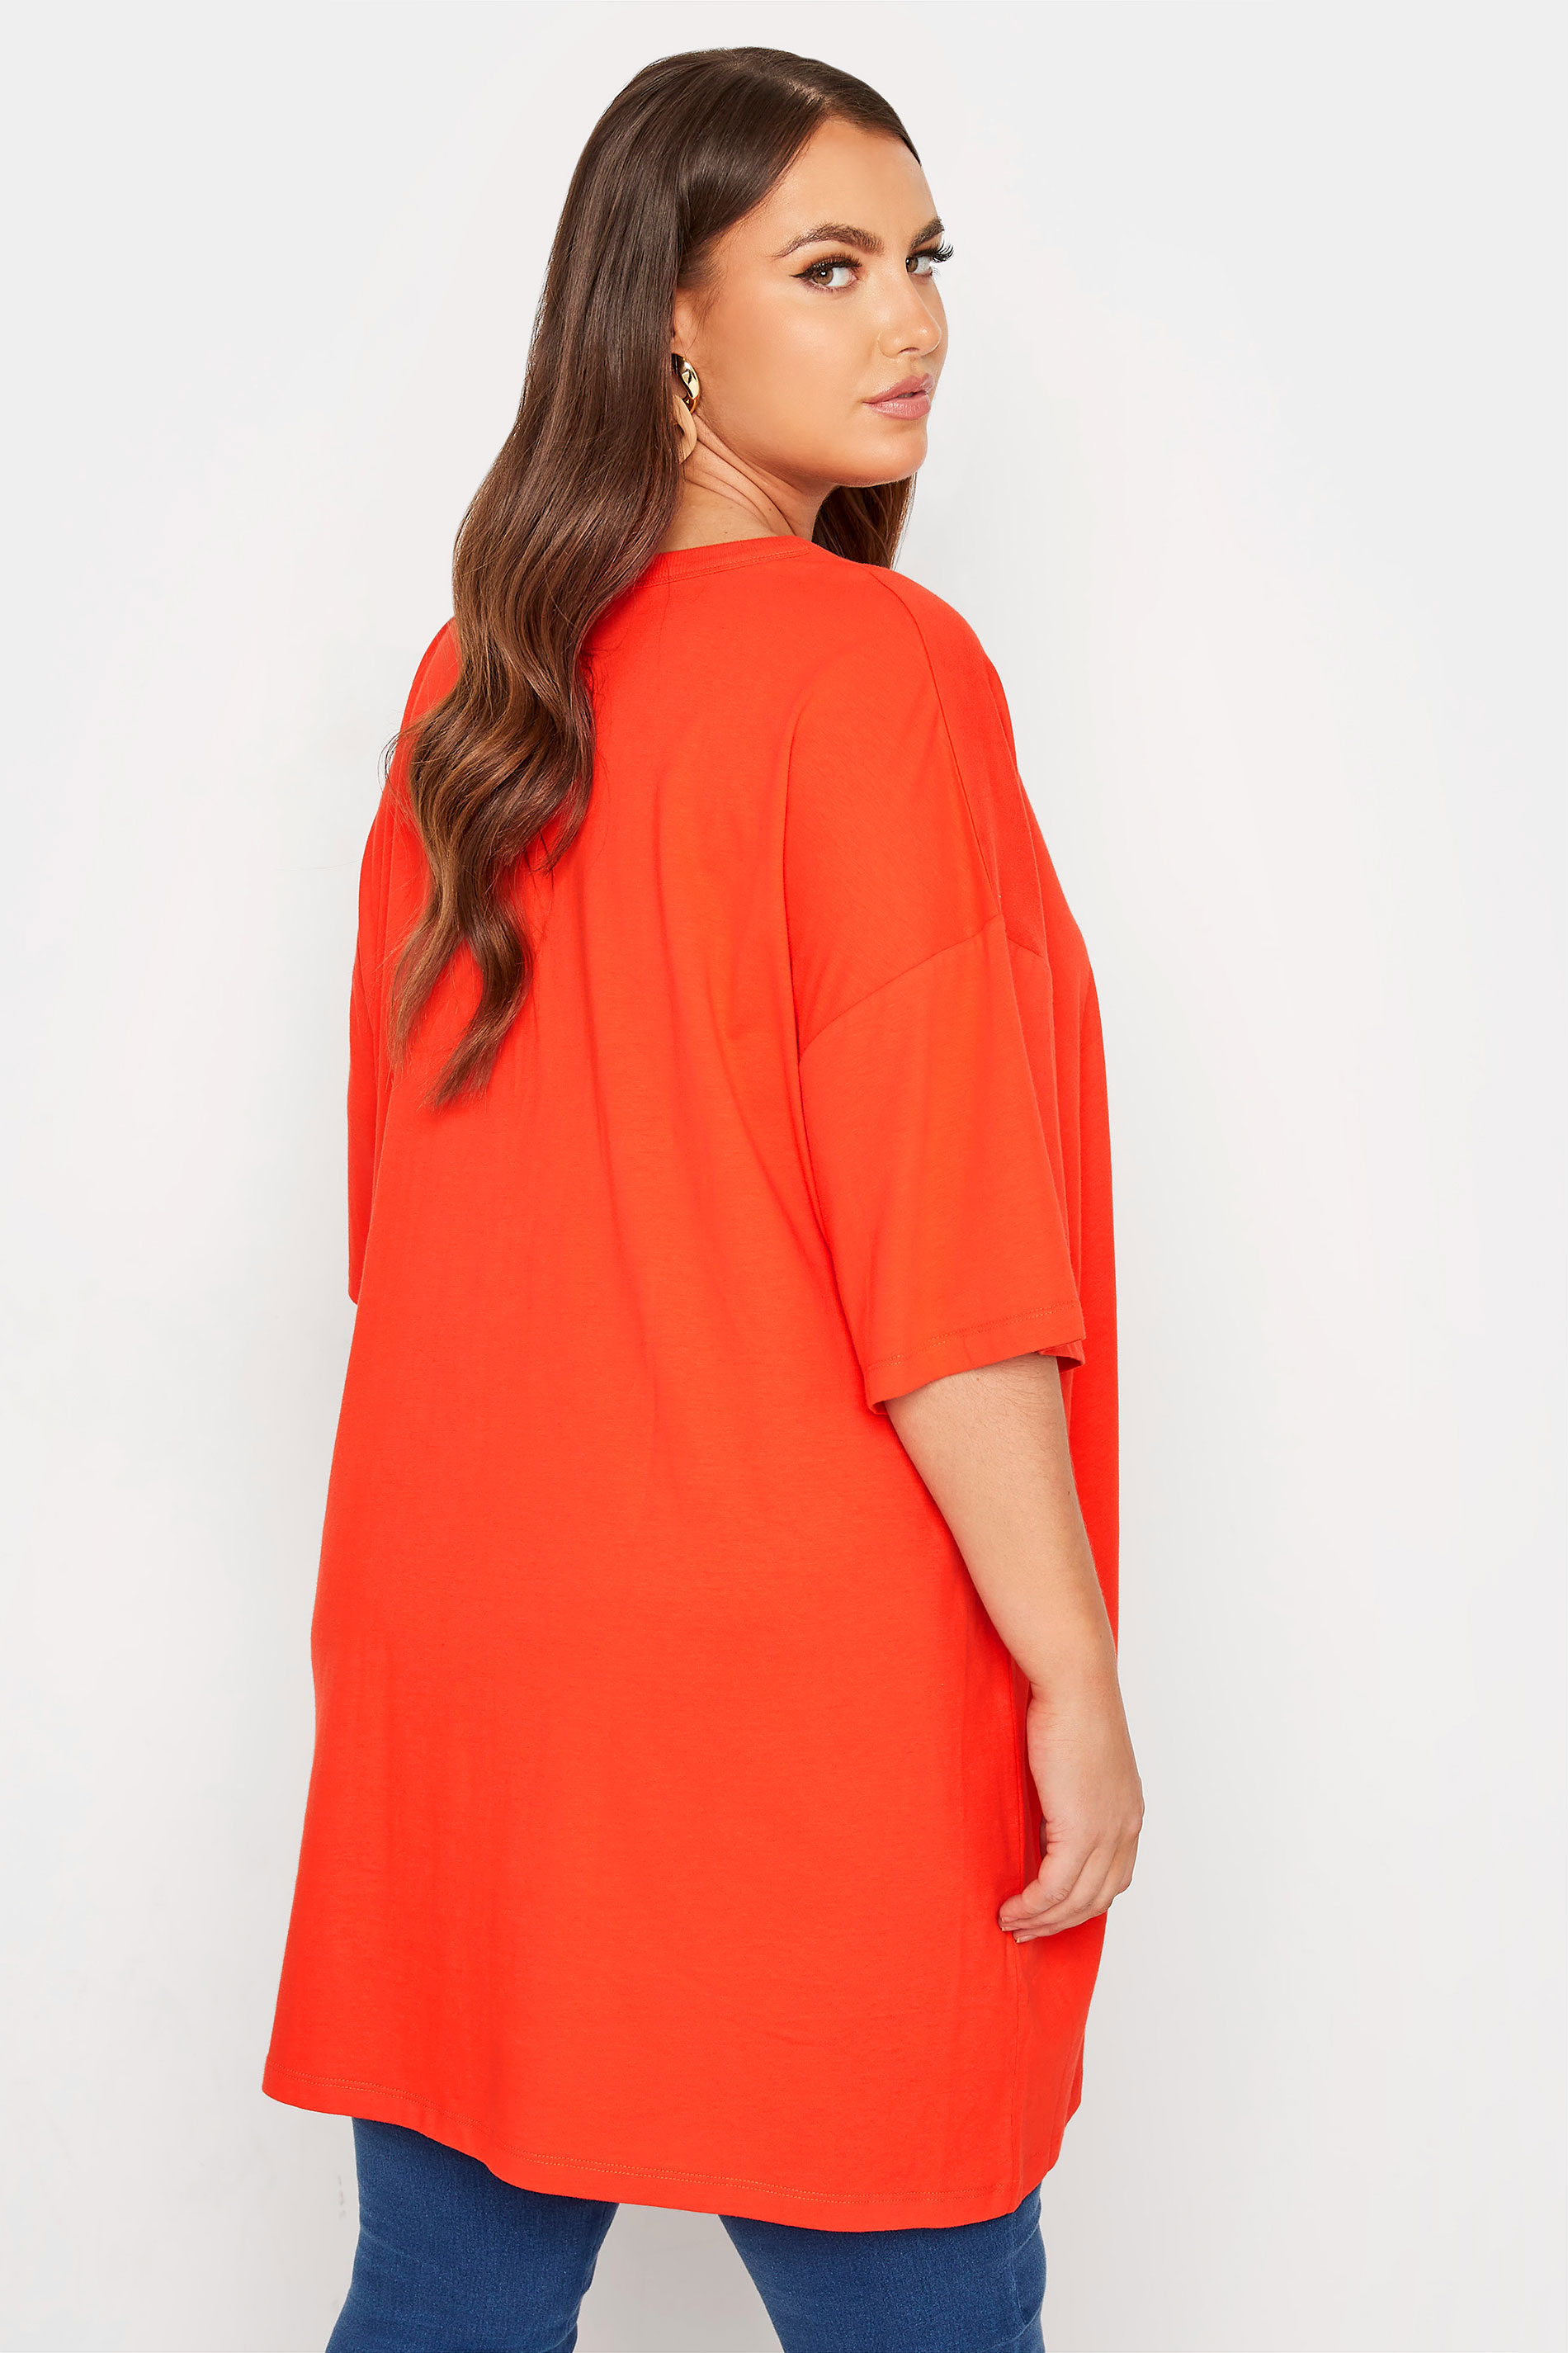 Grande taille  Tops Grande taille  T-Shirts | T-Shirt Orange Fluo en Jersey Design Oversize - PJ25443